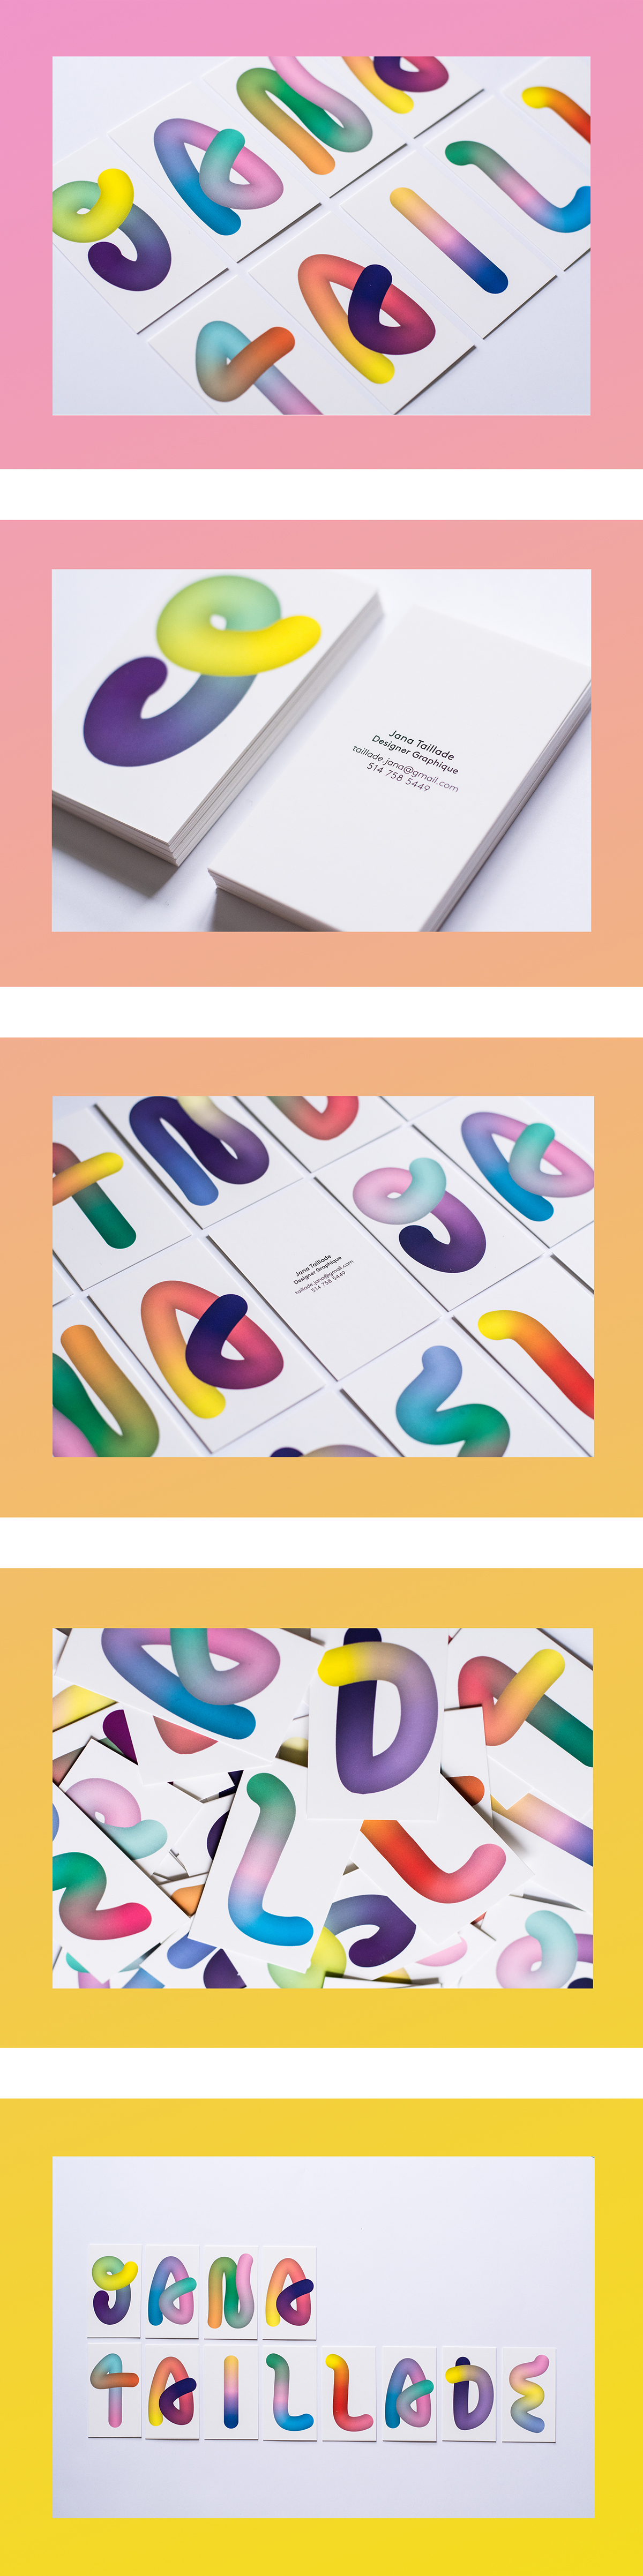 Adobe Portfolio Business Cards colors